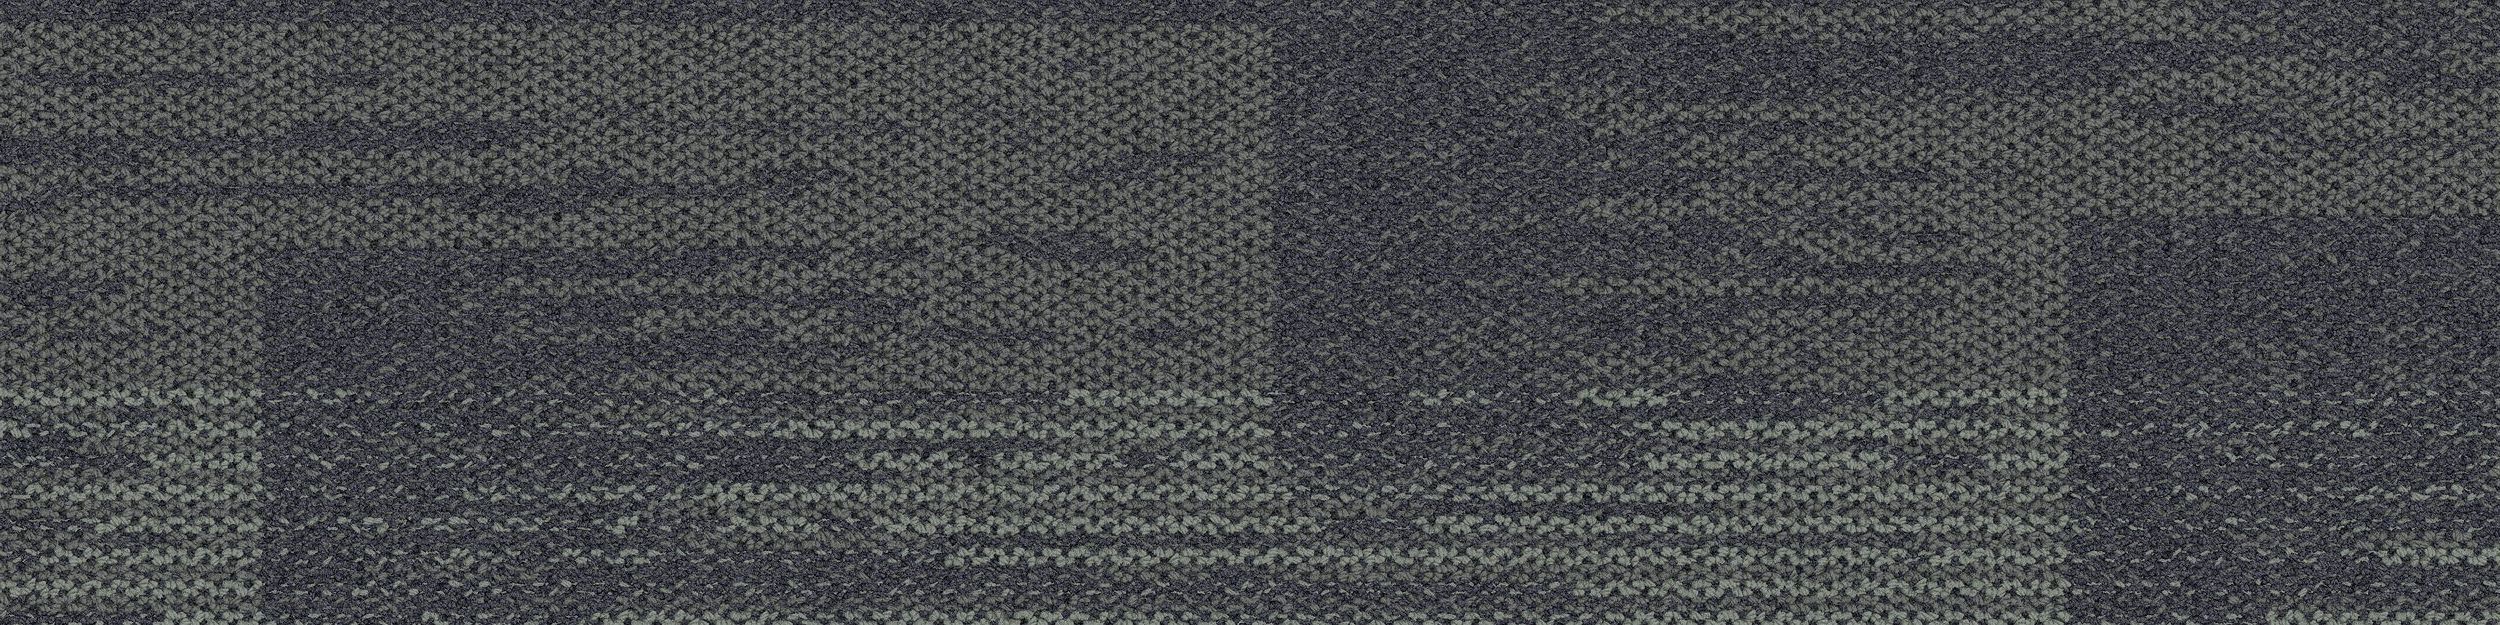 AE311 Carpet Tile In Granite image number 2